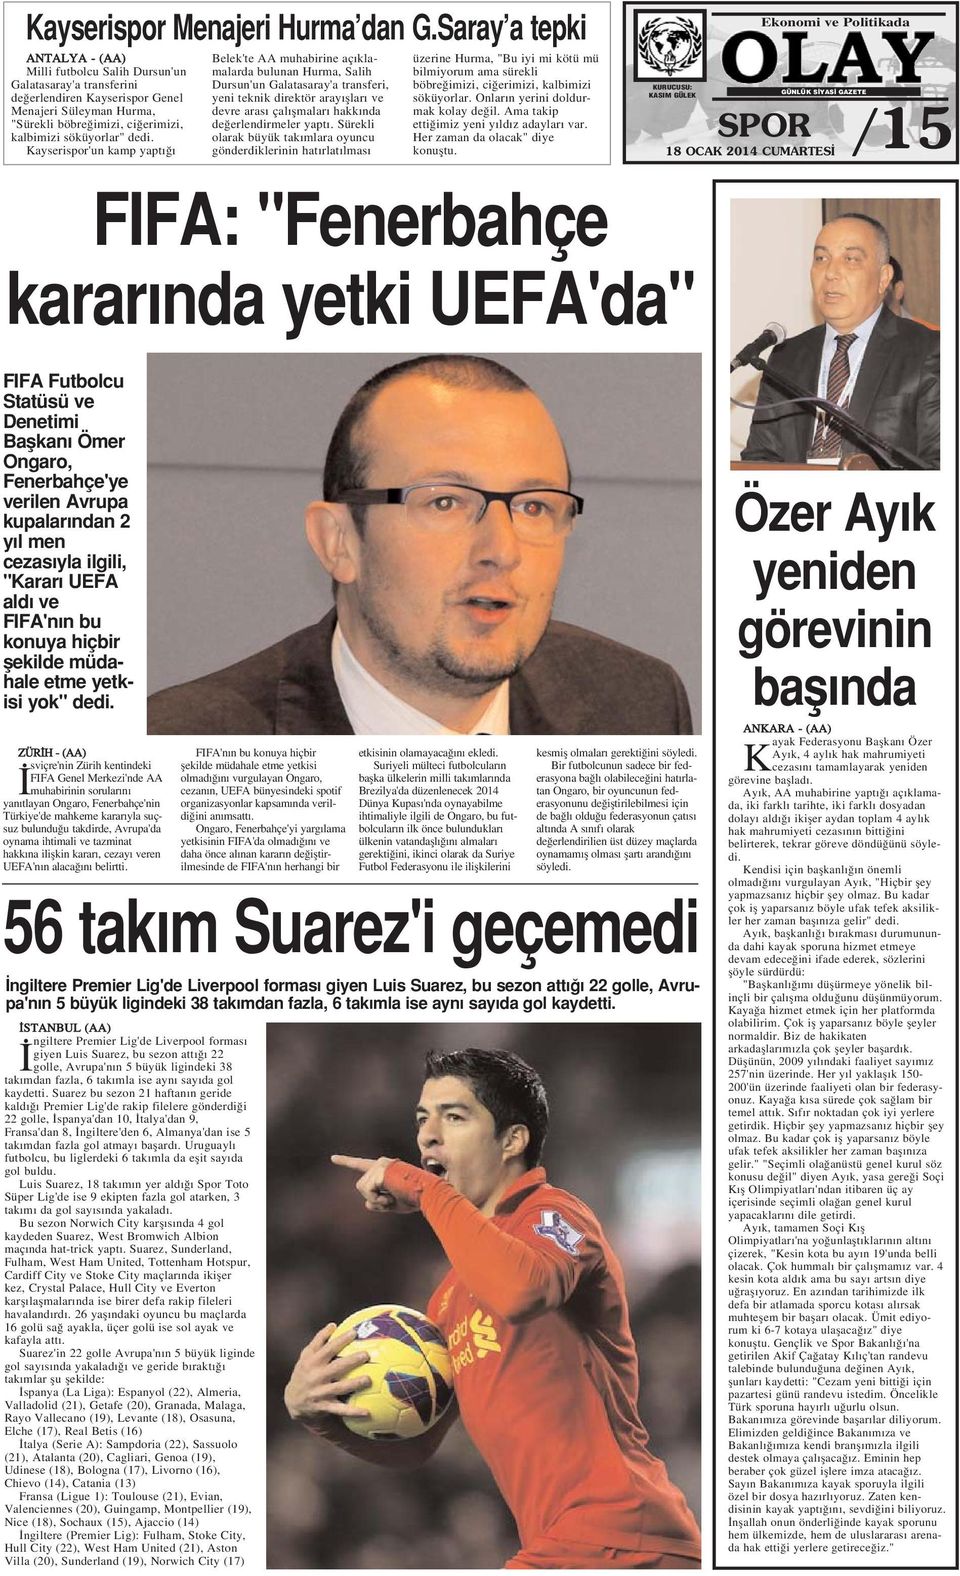 Kayserispor'un kamp yapt Belek'te AA muhabirine aç klamalarda bulunan Hurma, Salih Dursun'un Galatasaray'a transferi, yeni teknik direktör aray fllar ve devre aras çal flmalar hakk nda de